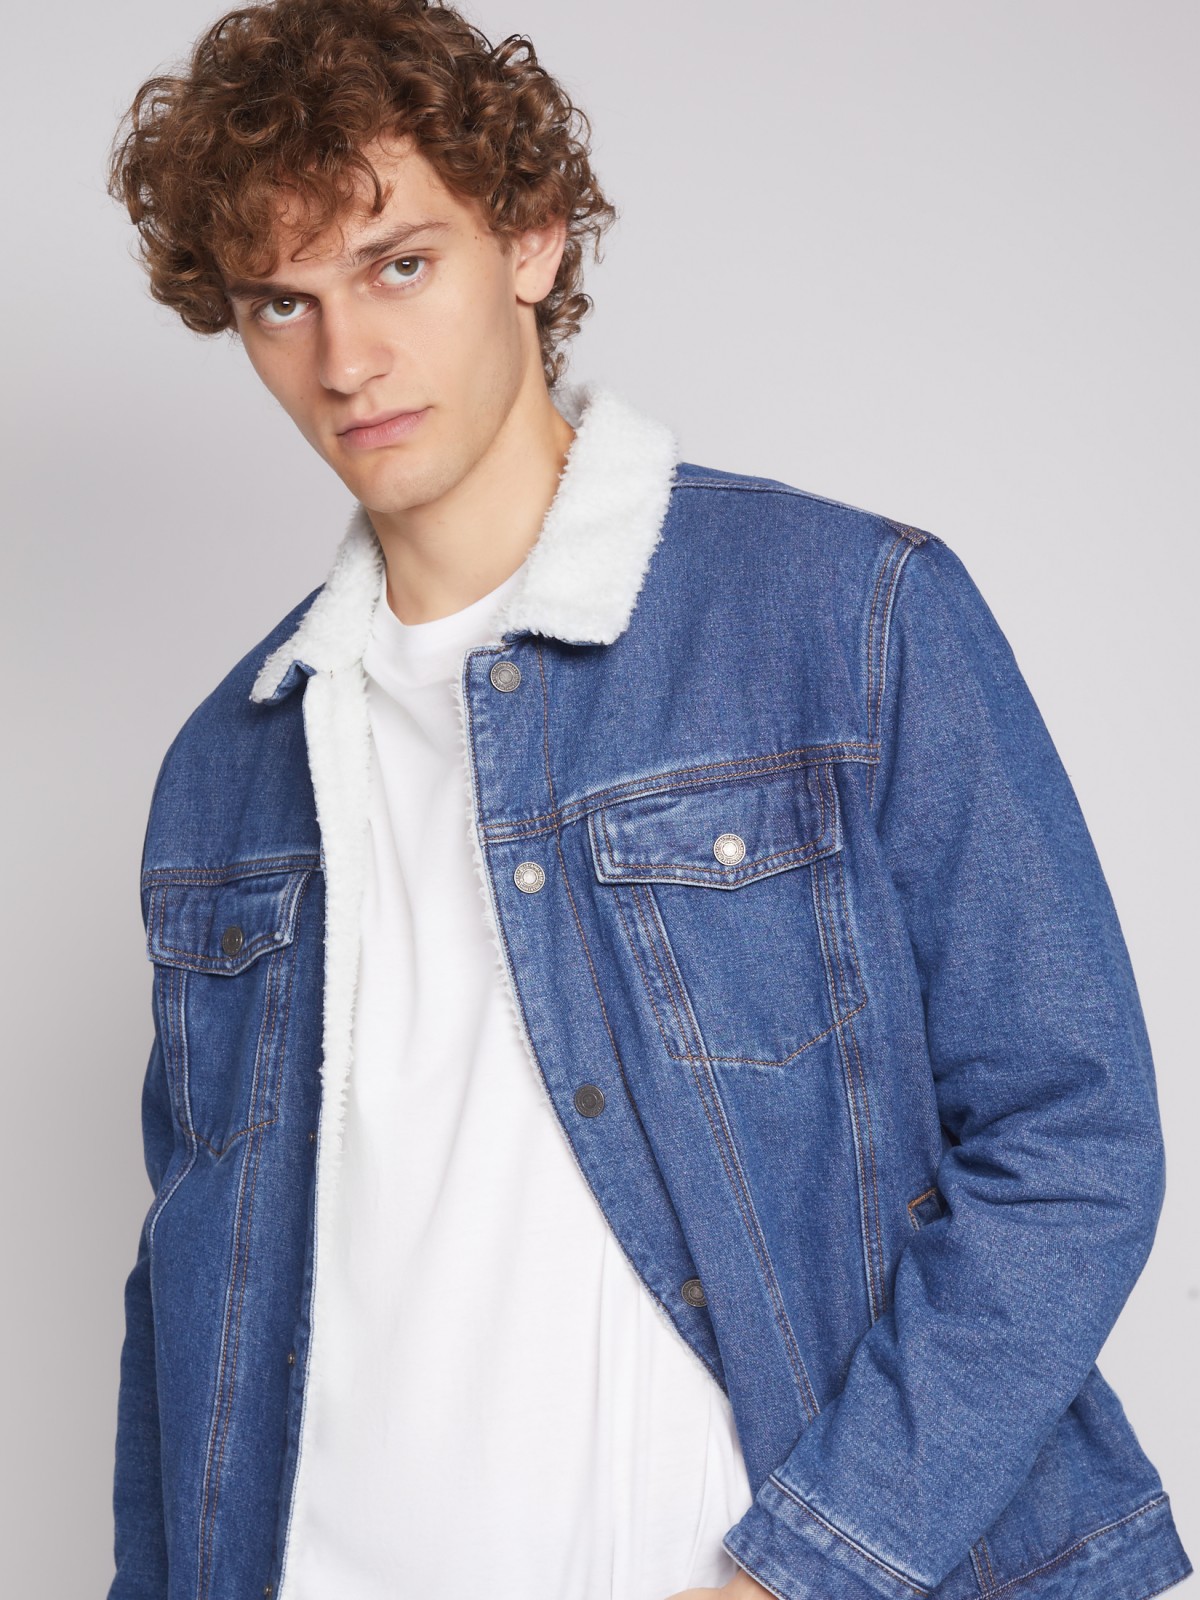 Утеплённая джинсовая куртка 012335W4S014, цвет Голубой, артикул012335W4S014 - купить в интернет-магазине ZOLLA по цене: 2 499 ₽